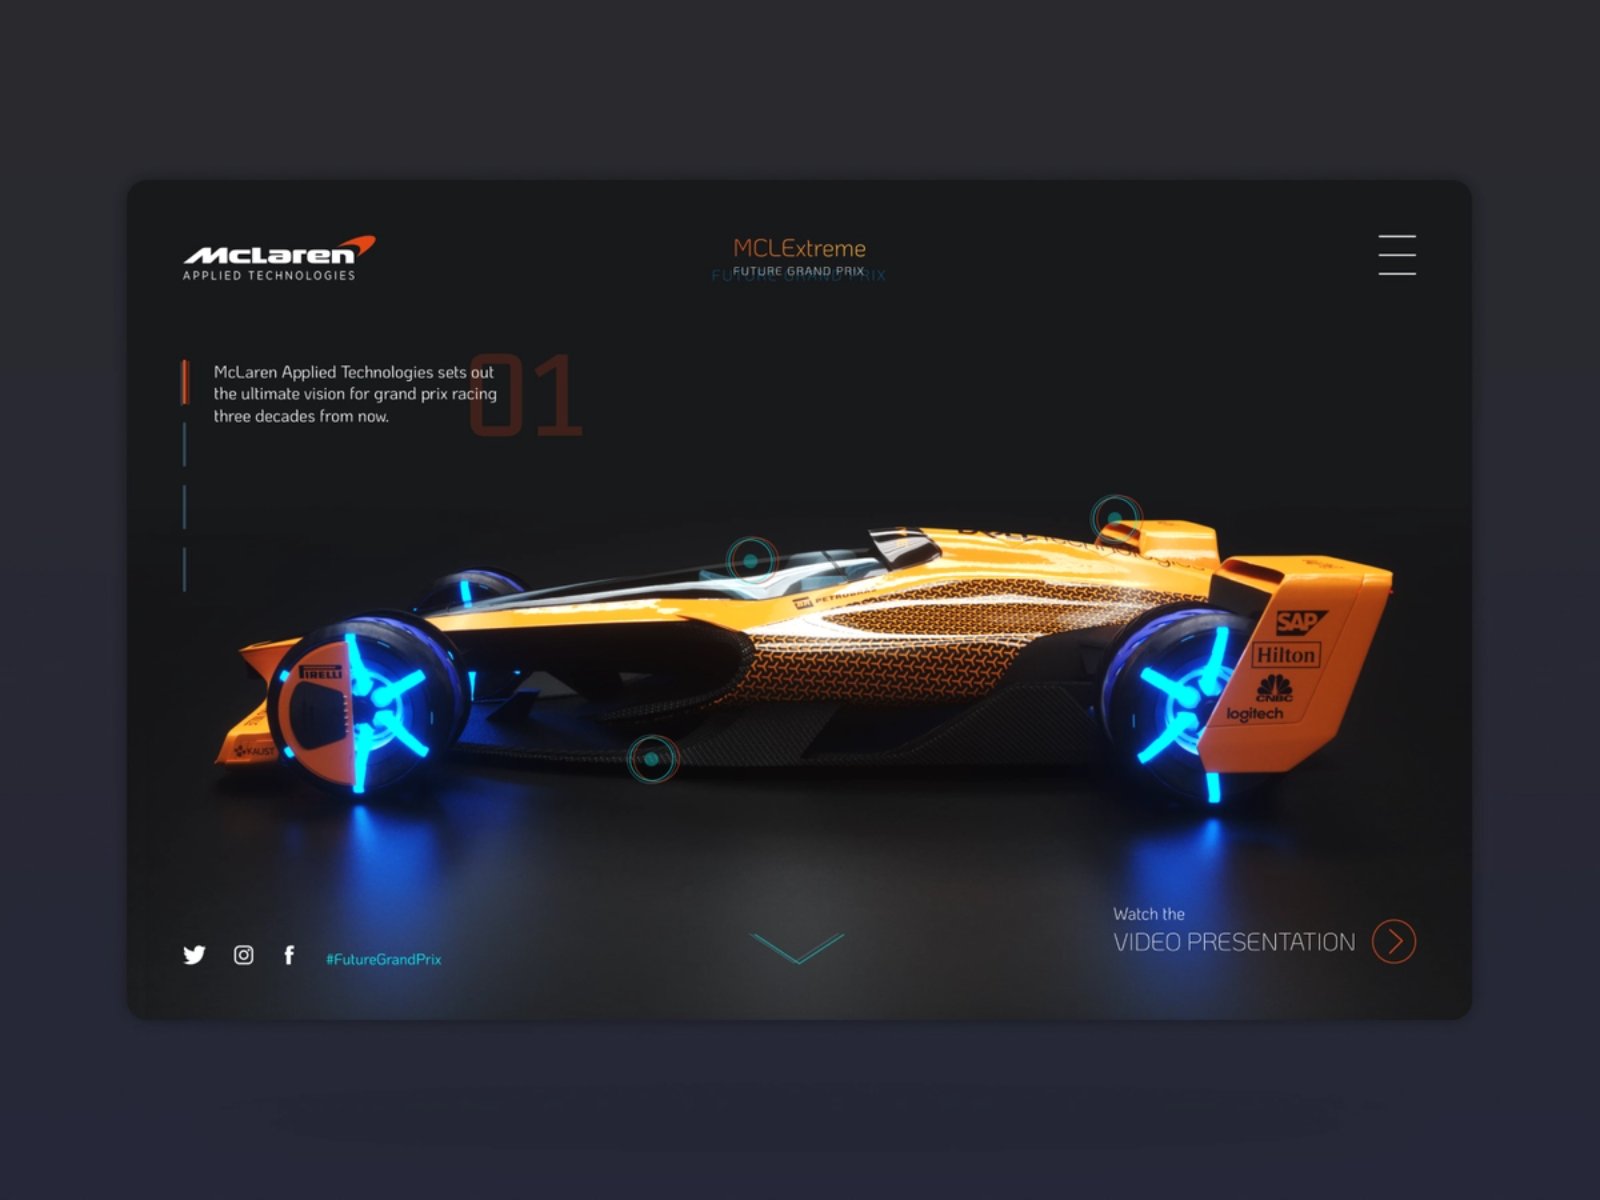 极速狂飙！12 组 F1 赛车 WEB 界面设计灵感